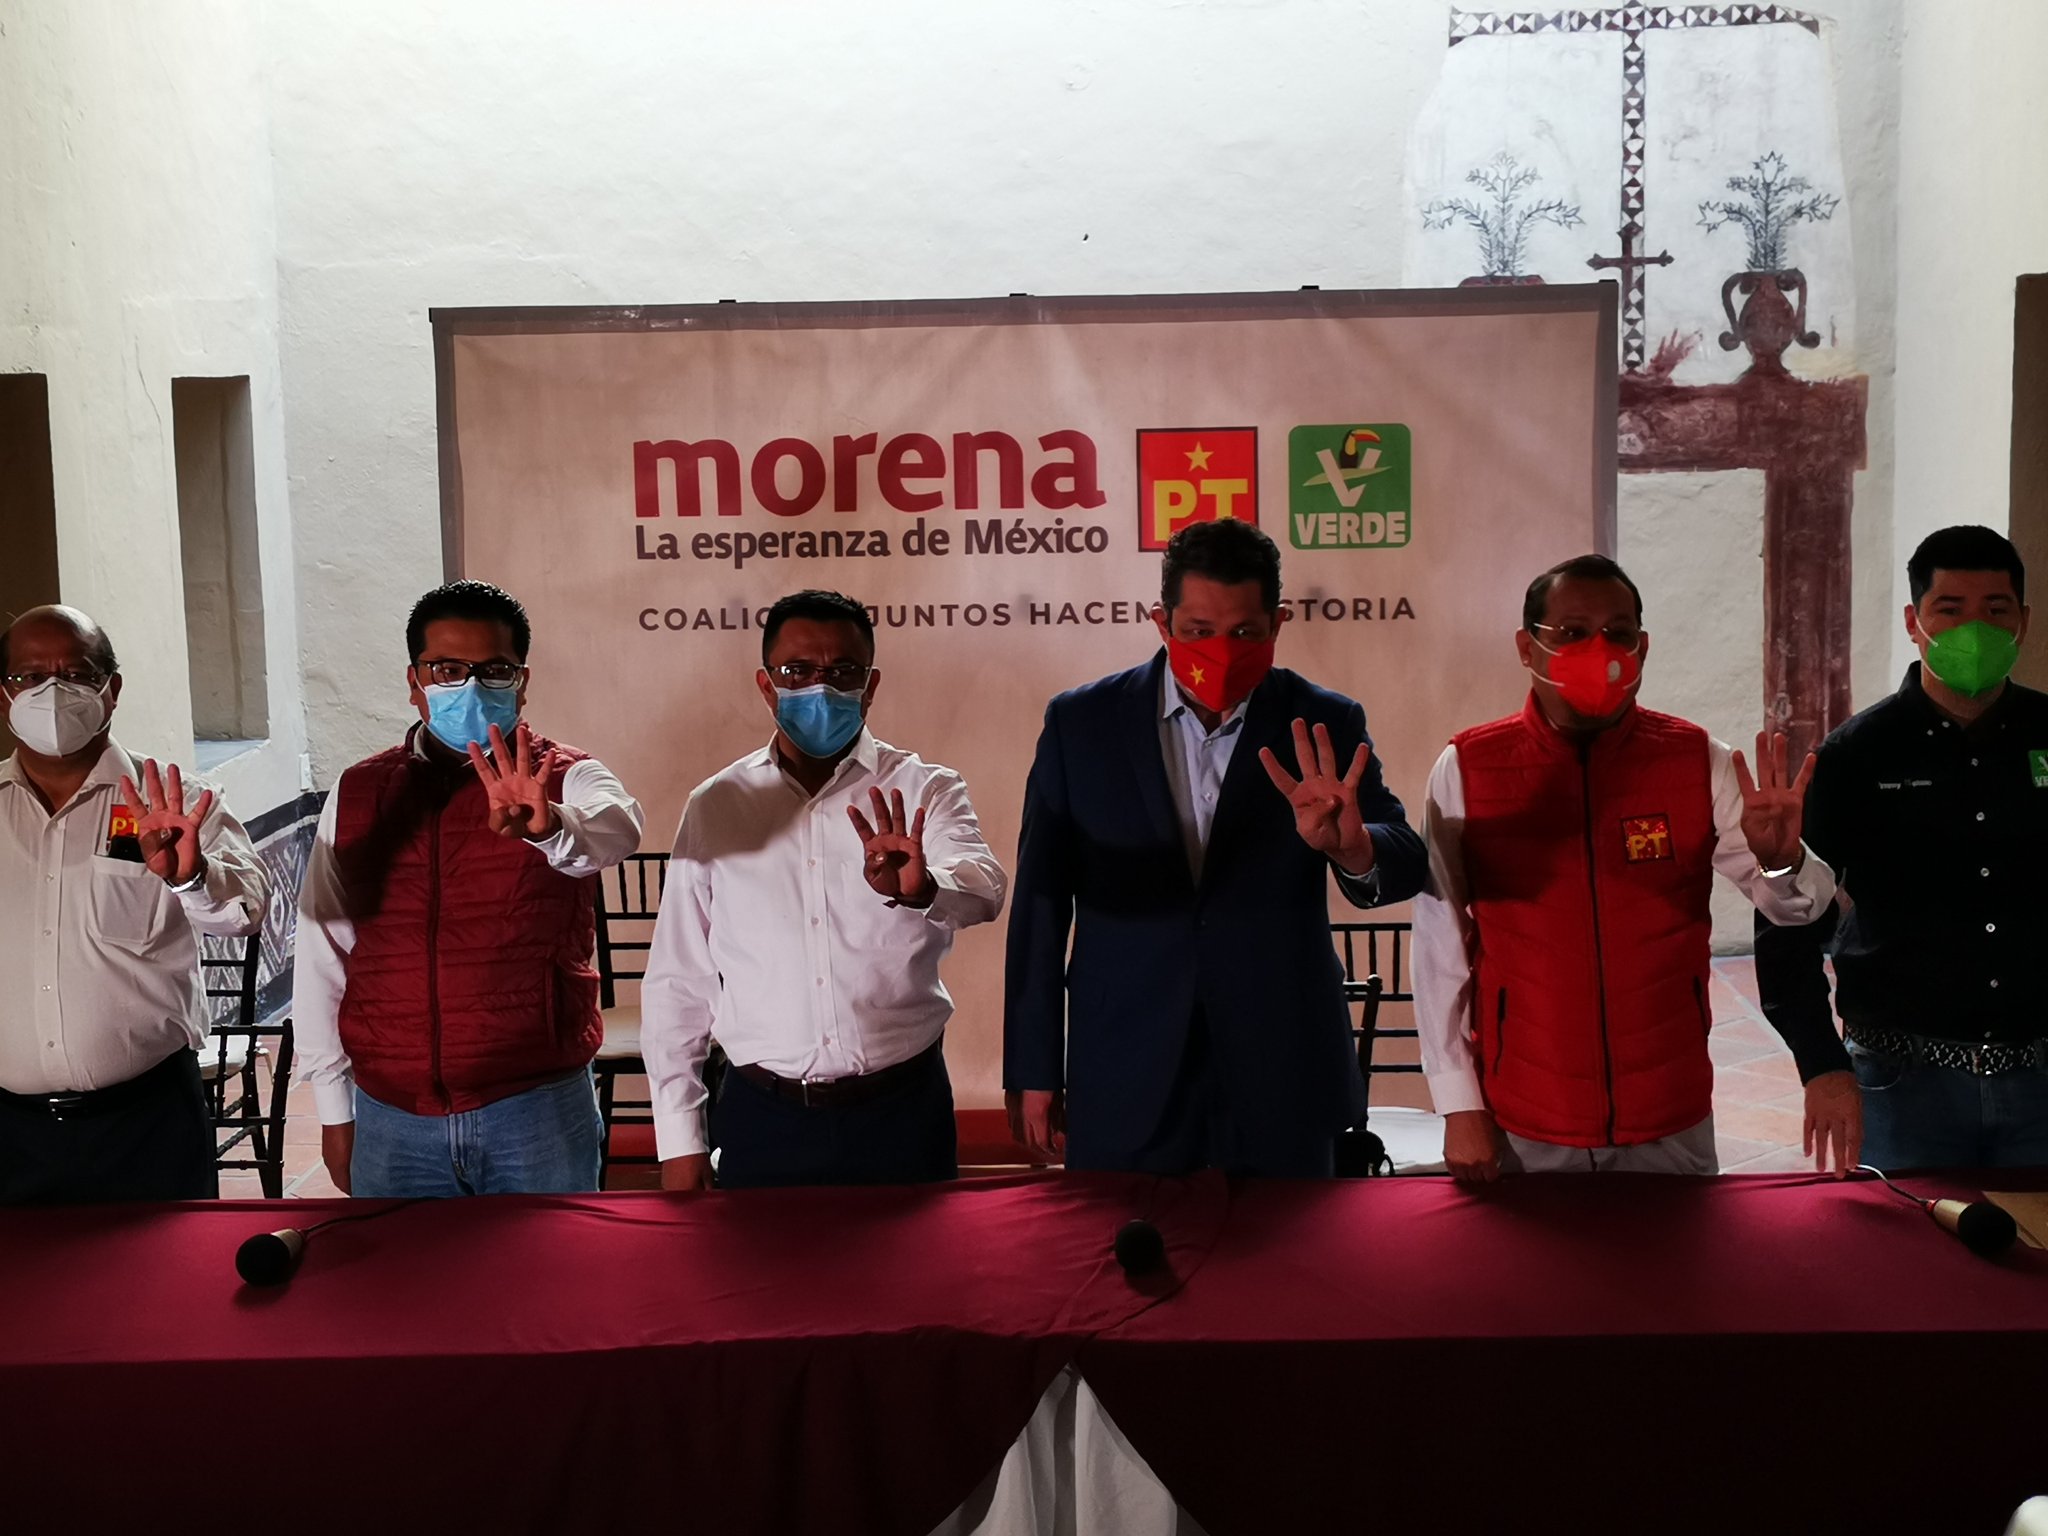 ¡Inician campañas! Alianza Va por Puebla con eventos en todo el estado; coalición Morena, PT y Verde, llaman a la unidad